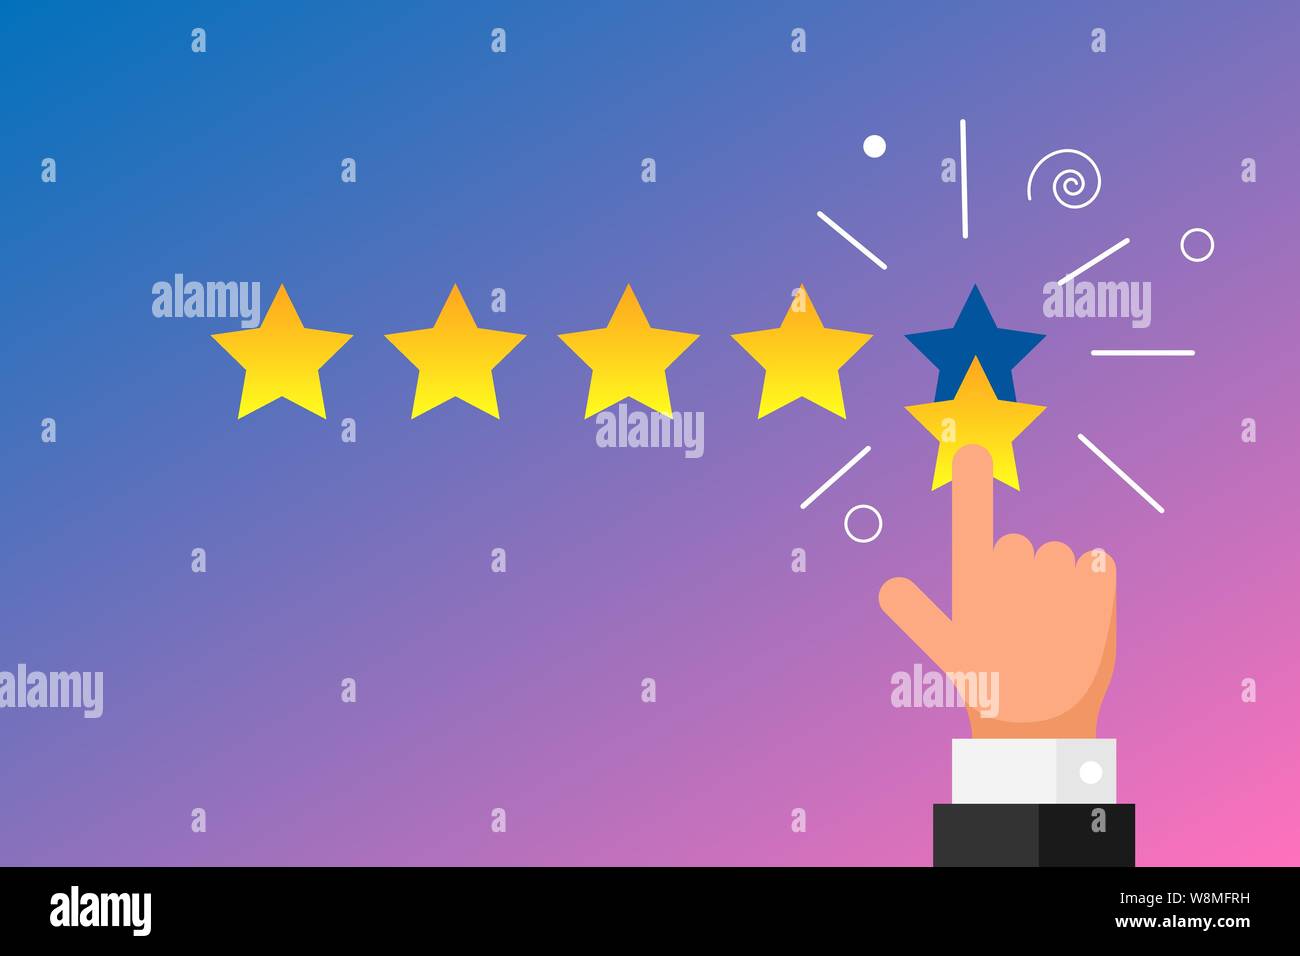 Online-Feedback Ruf beste Qualität Kundenbewertung Konzept flach Stil. Geschäftsmann Hand Finger zeigt fünf Gold-Sterne-Bewertung auf Gradienten Hintergrund. Vektorgrafik Stock Vektor